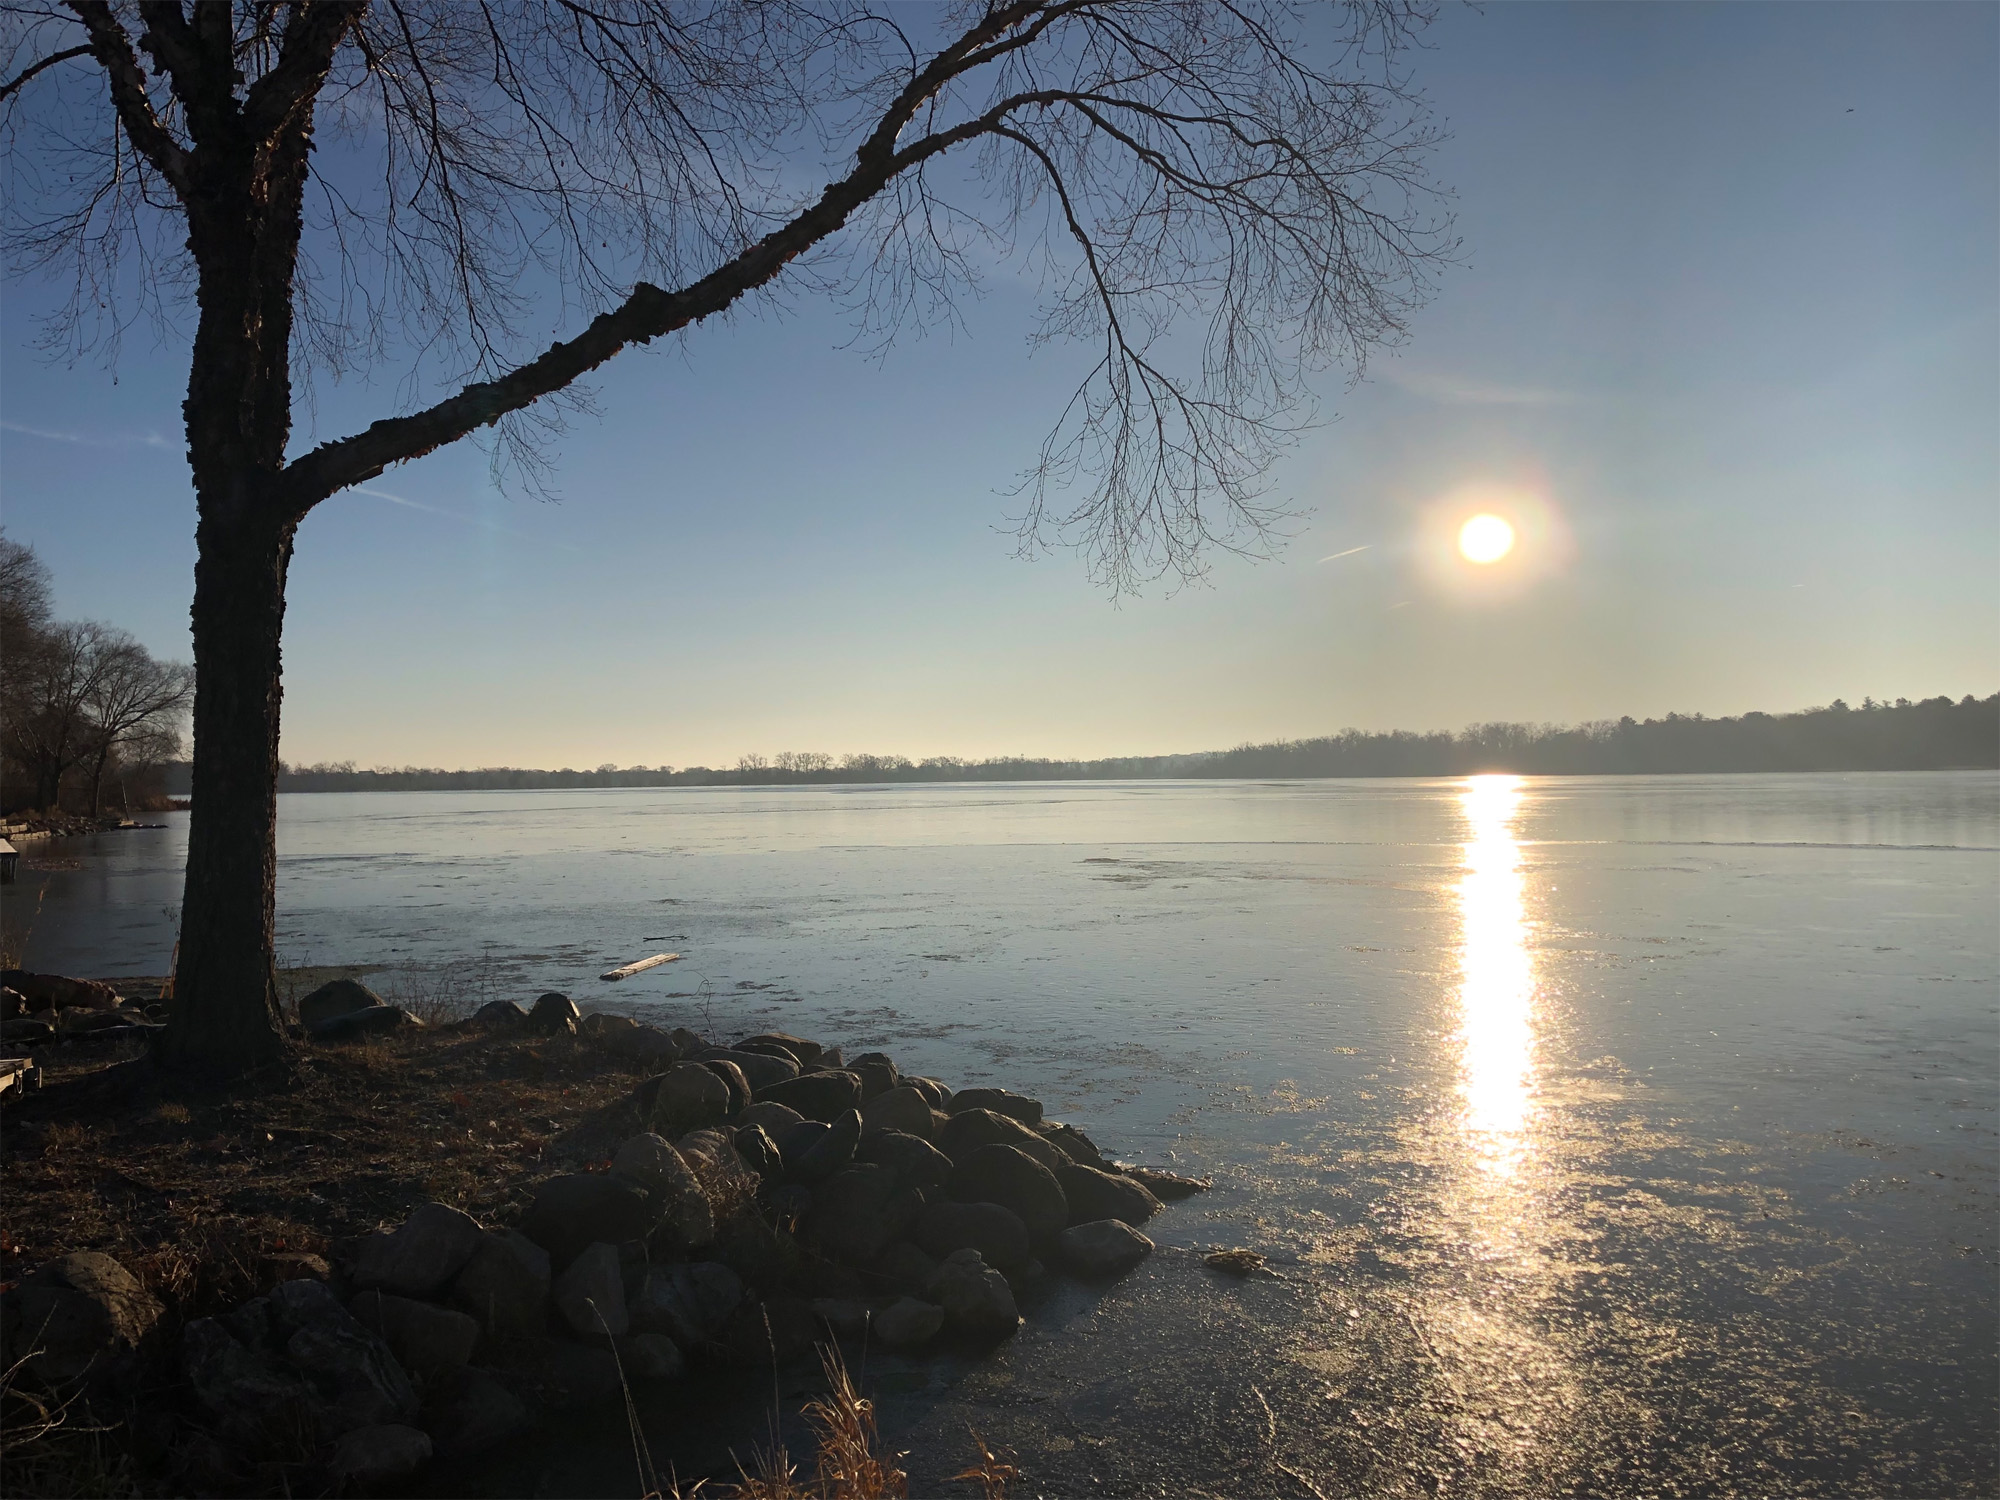 Lake Wingra on November 24, 2019.